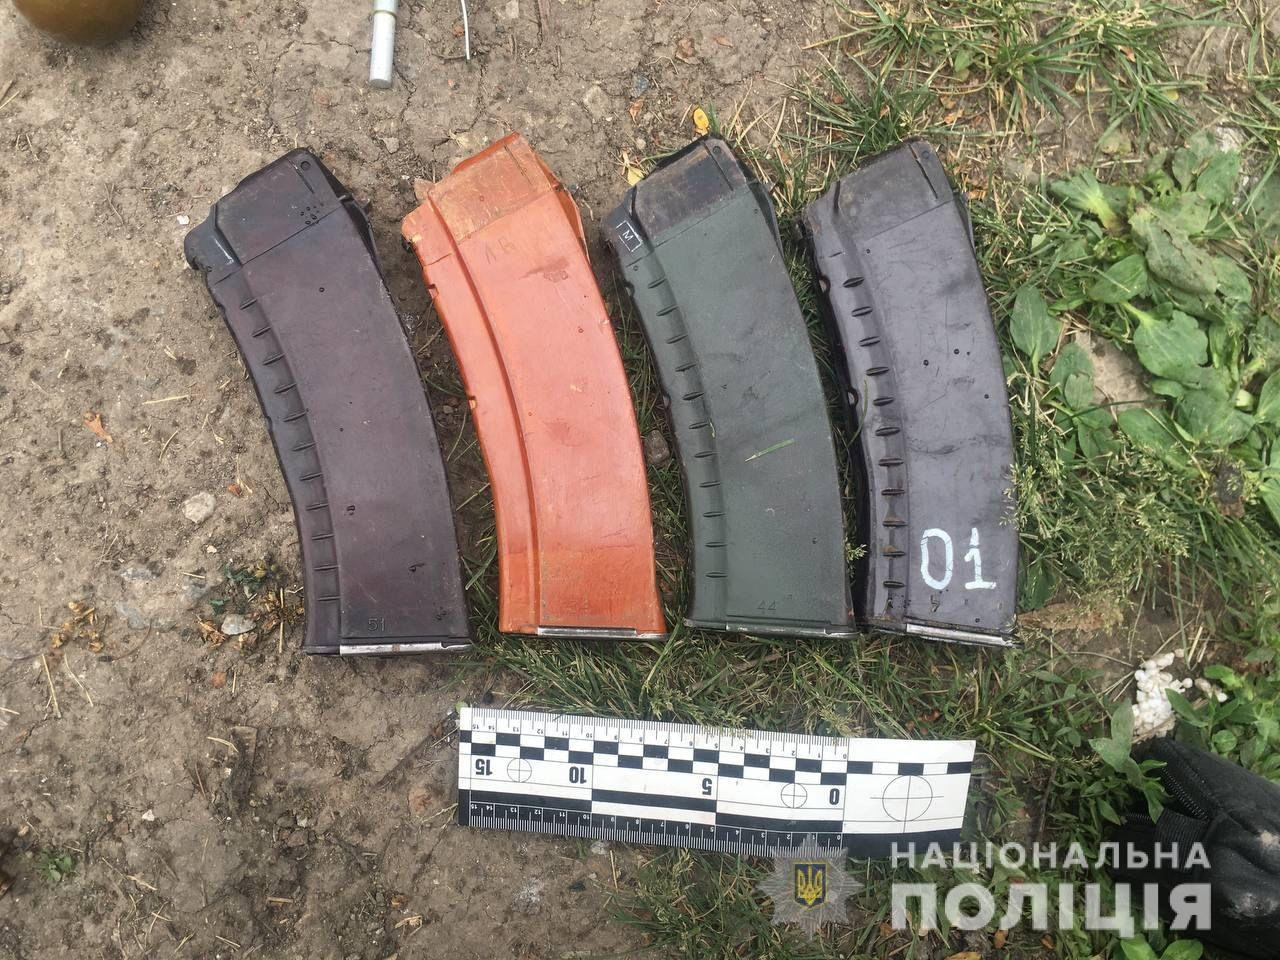 Криминал Харьковщина: Пойман мужчина с арсеналом оружия в Чугуеве